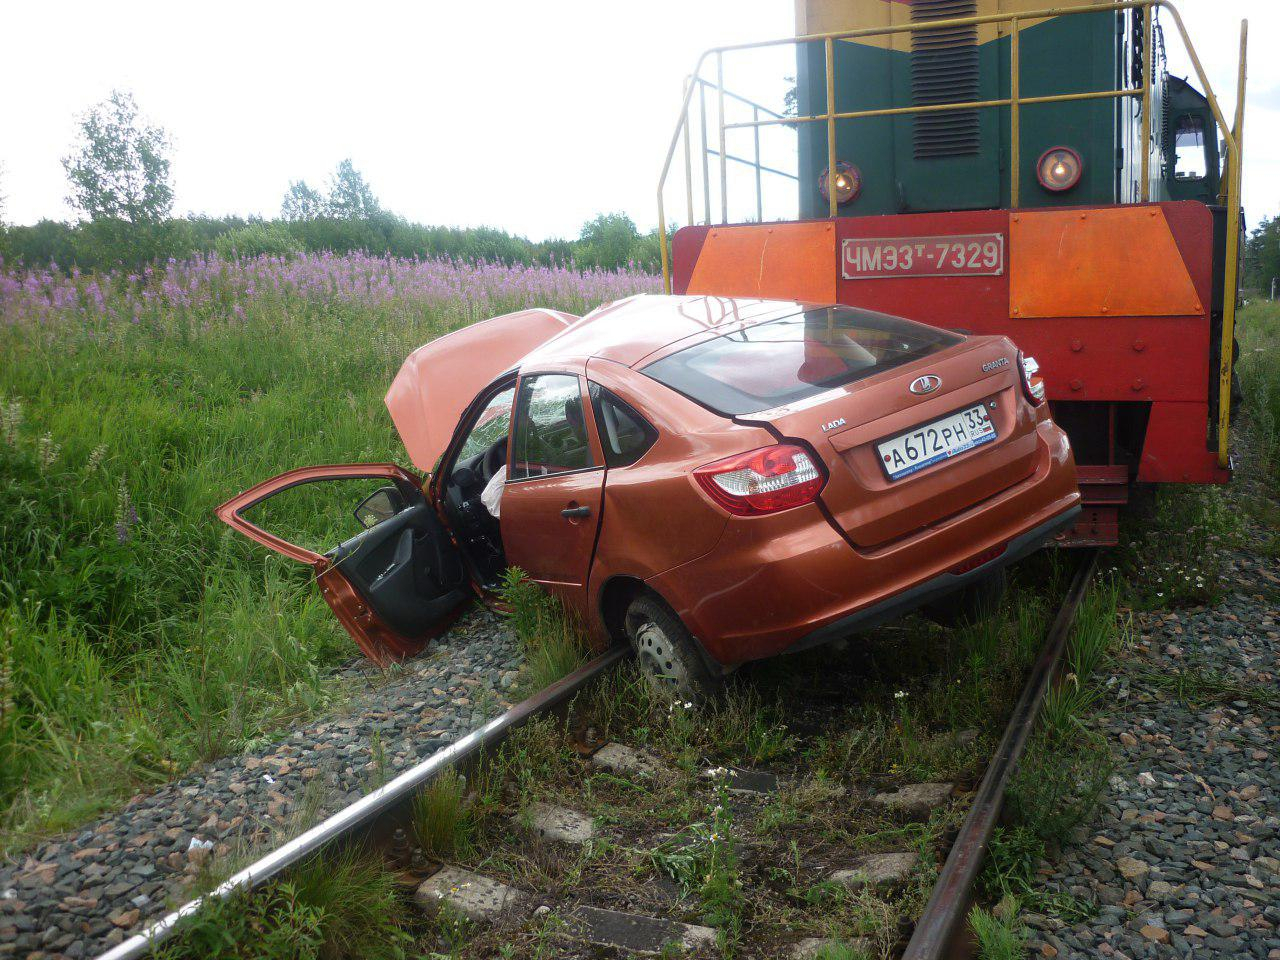 Во Владимирской области поезд протаранил легковой автомобиль (фото)